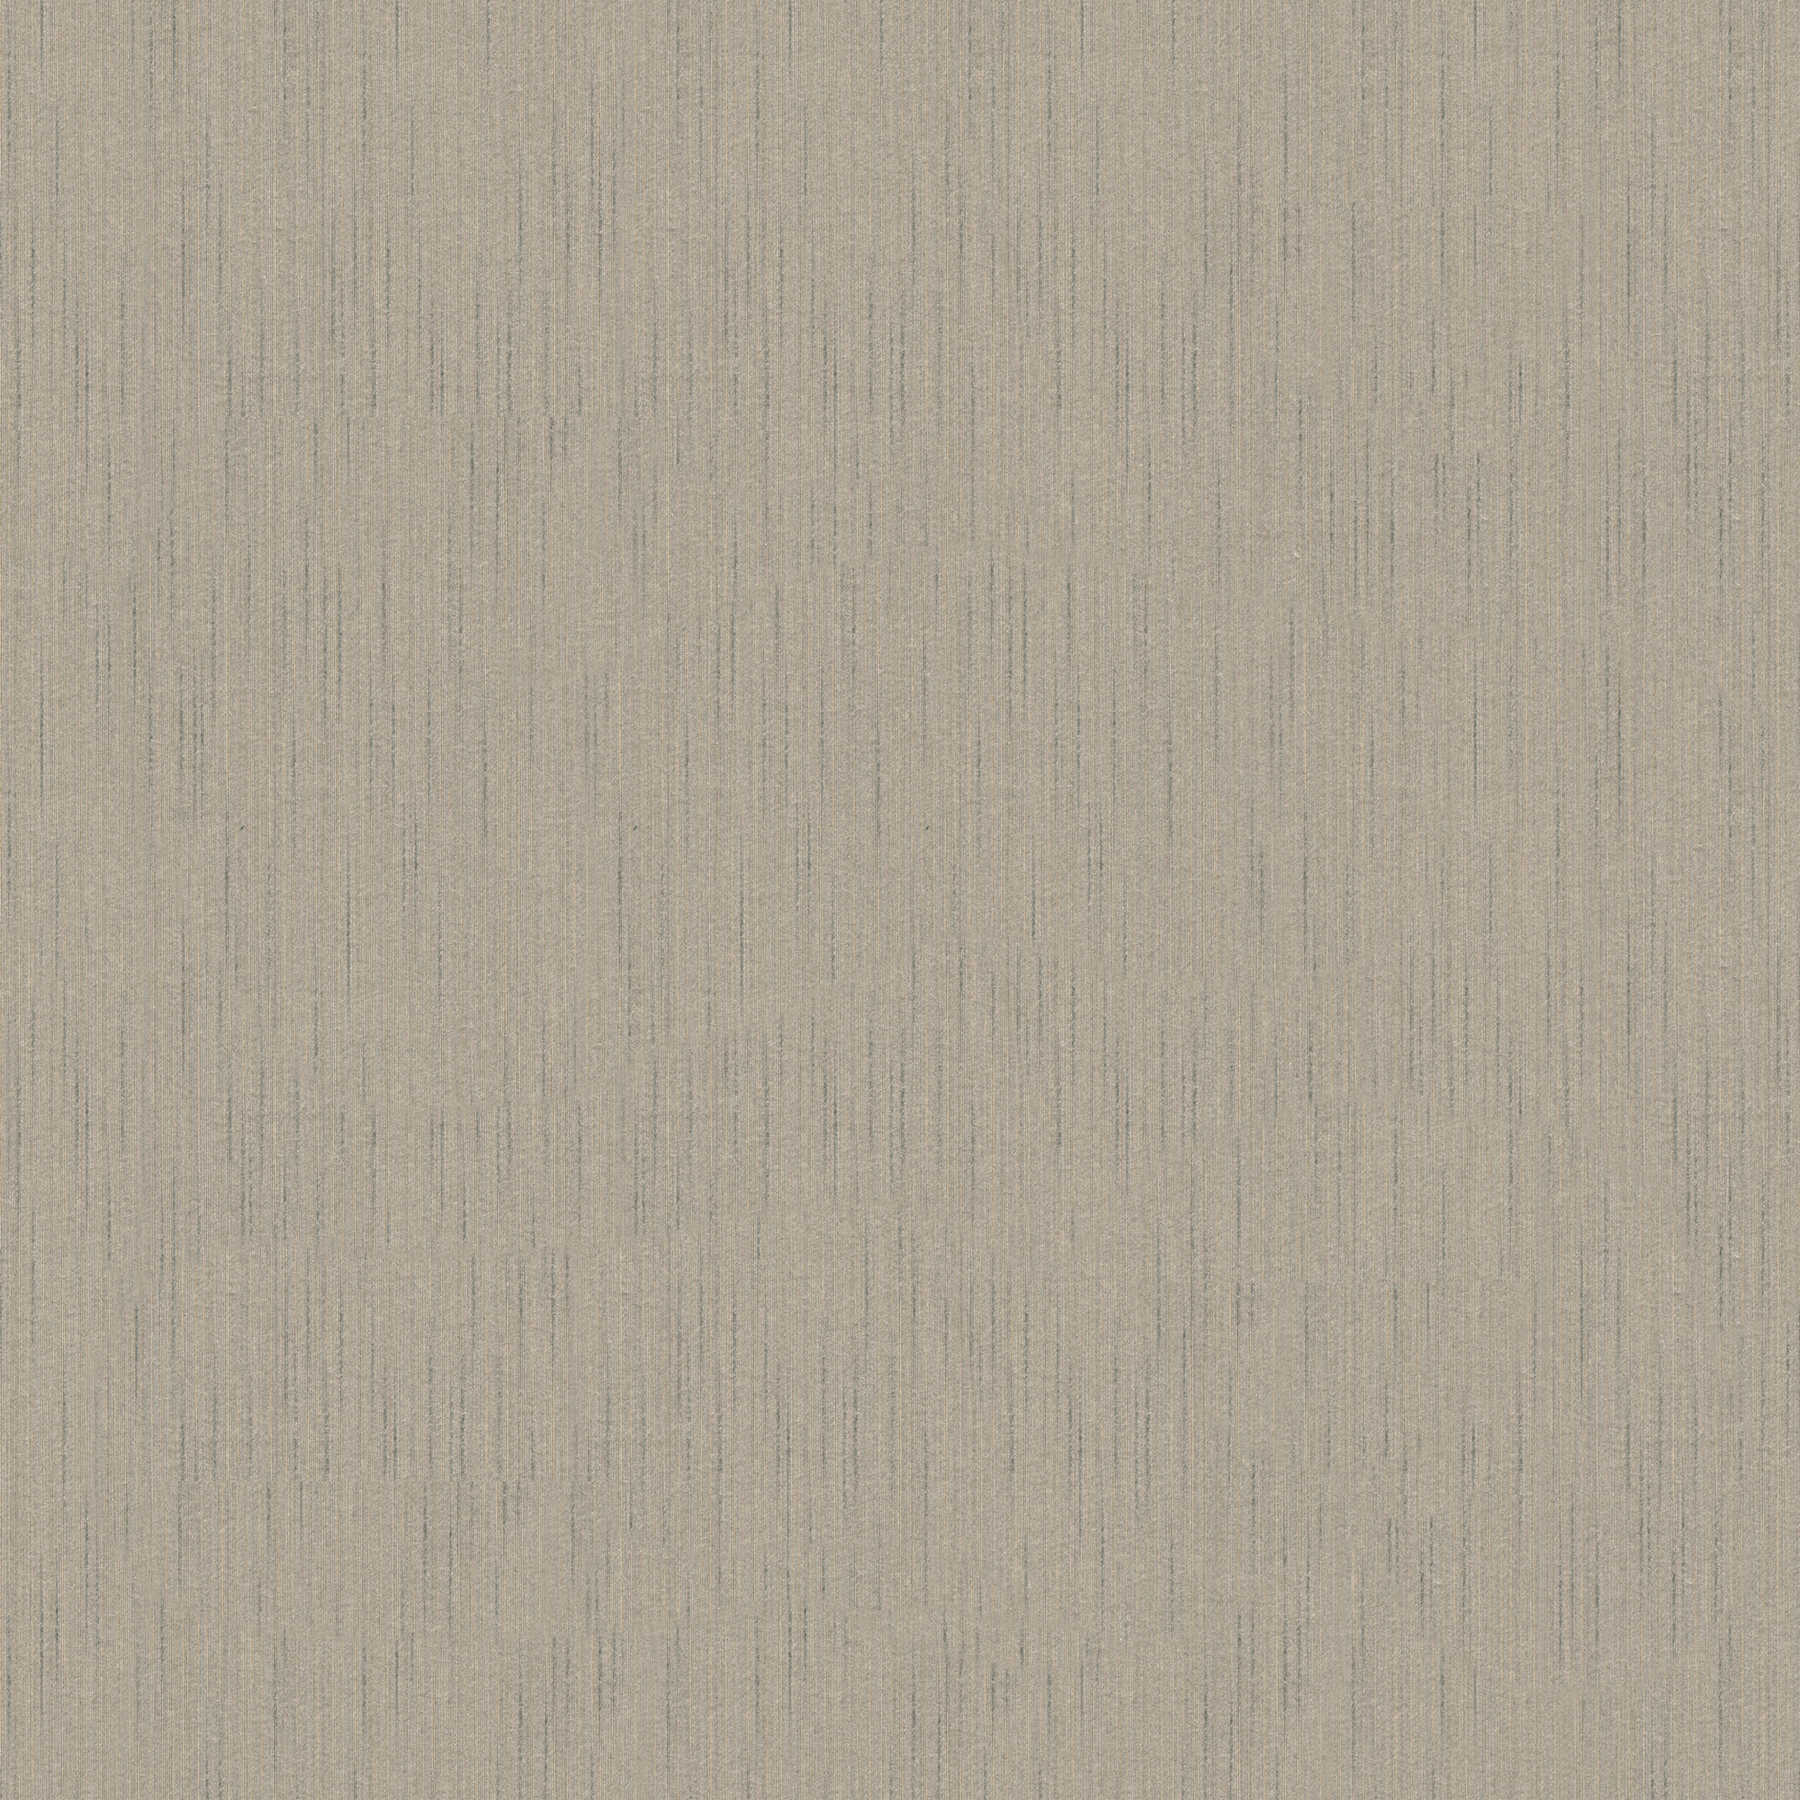 Papier peint design textile gris-marron avec motif chiné
